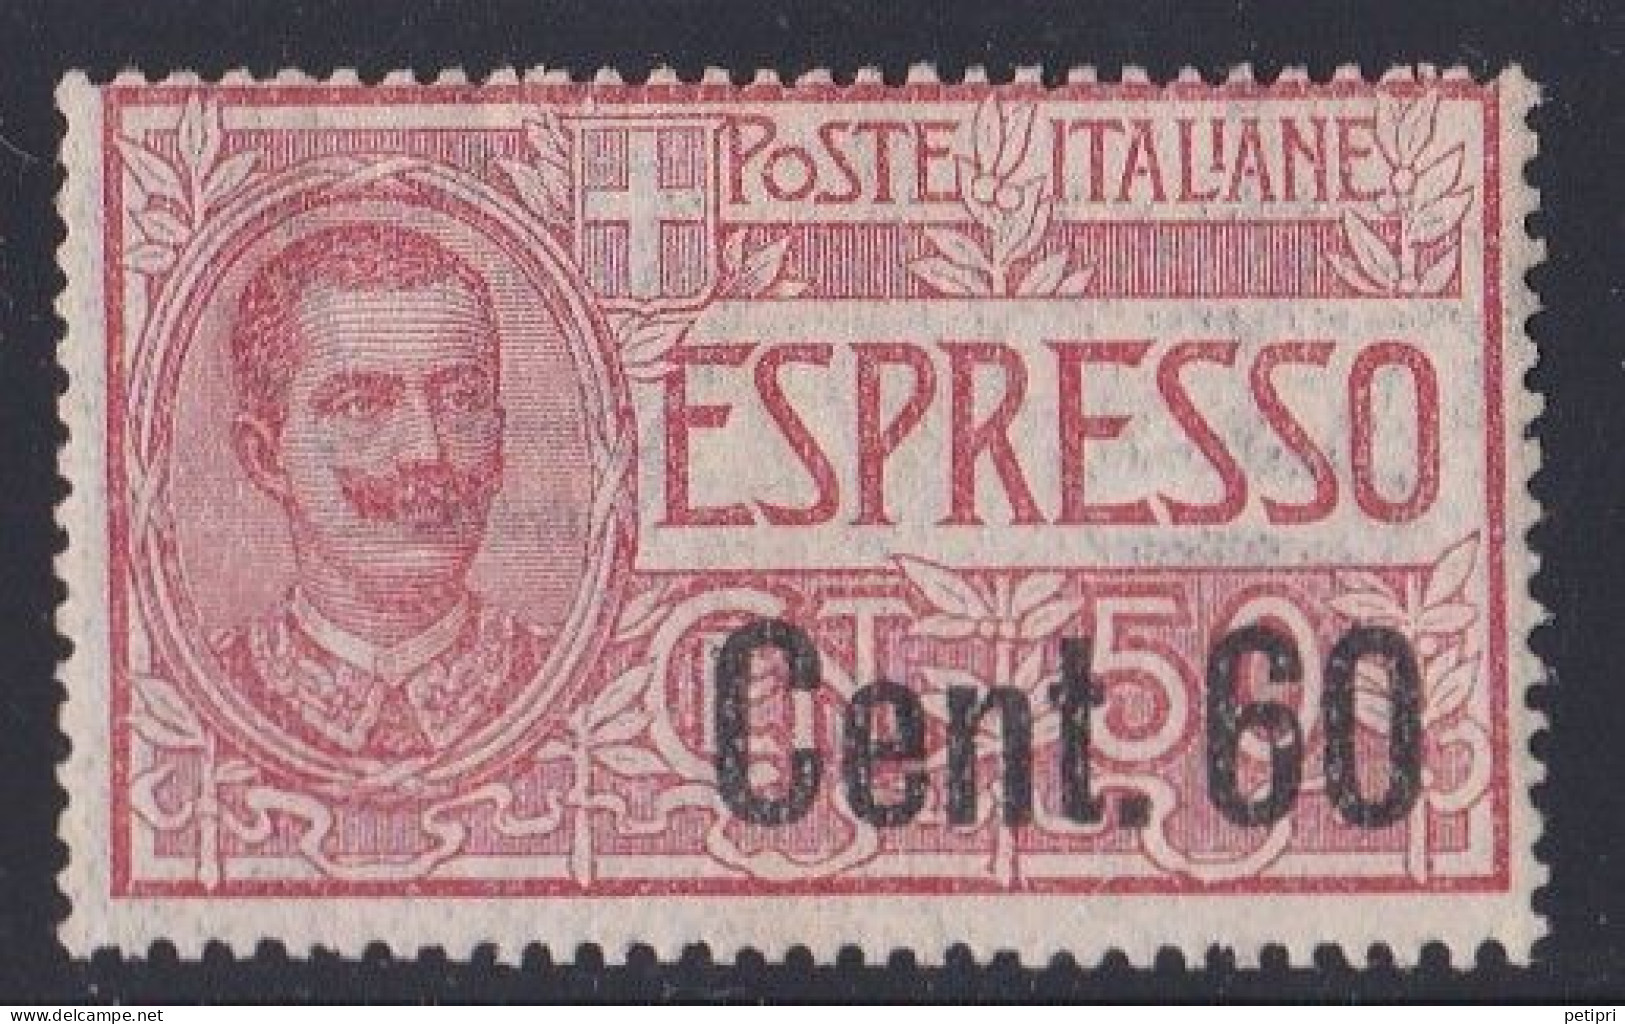 Italie - 1900 - 1944  Victor Emmanuel III  - Poste Expresse  Y&T  N ° 15  Neuf * - Poste Exprèsse